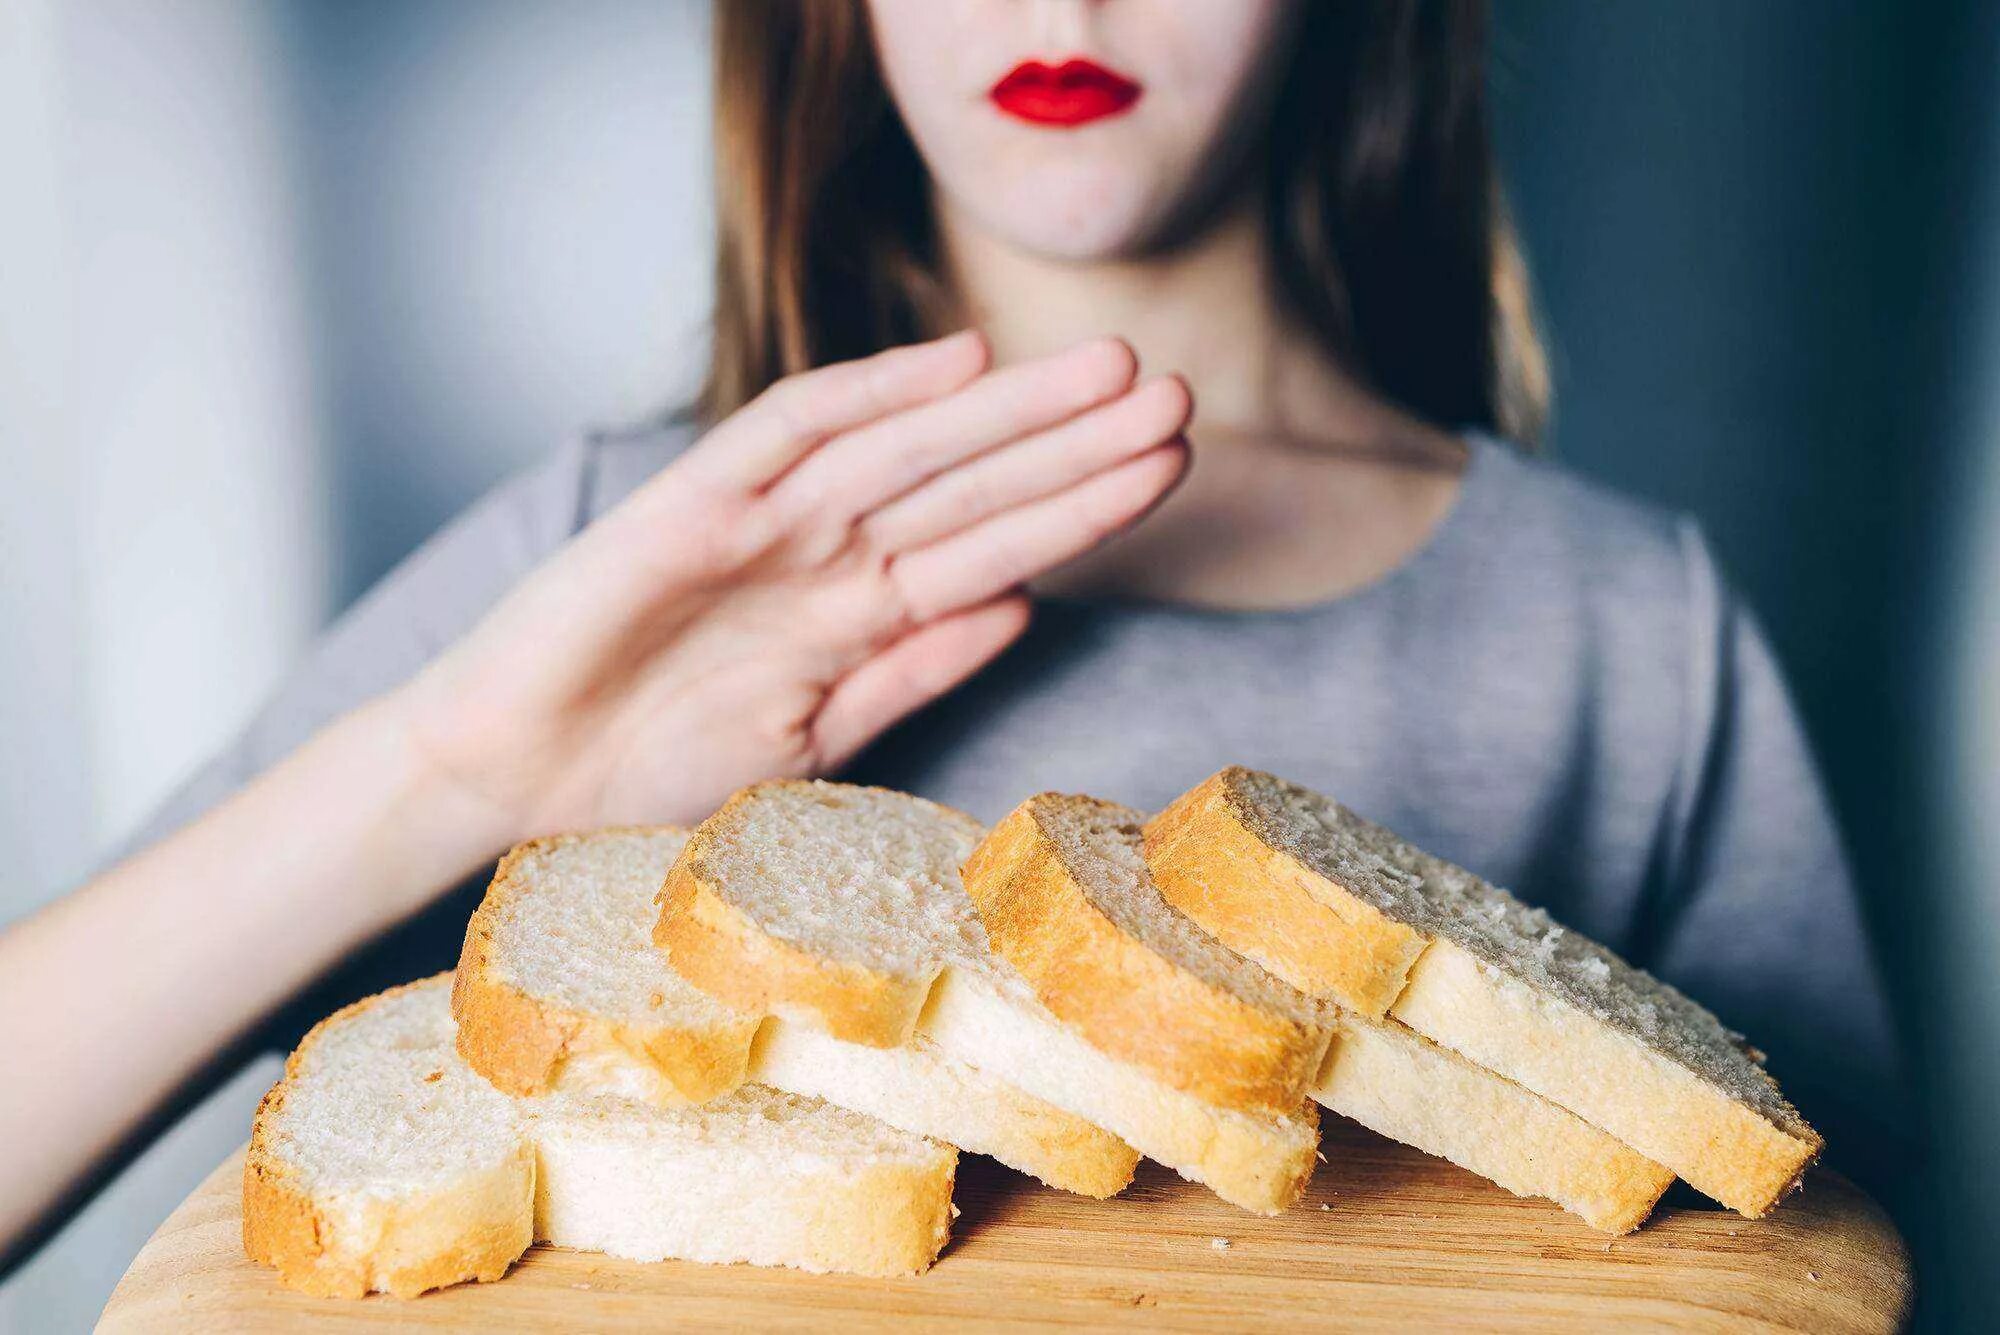 После сладкого соленое. Нарезанный хлеб. Кушает хлеб. Человек ест хлеб. Девушка с диетическими хлебцами.